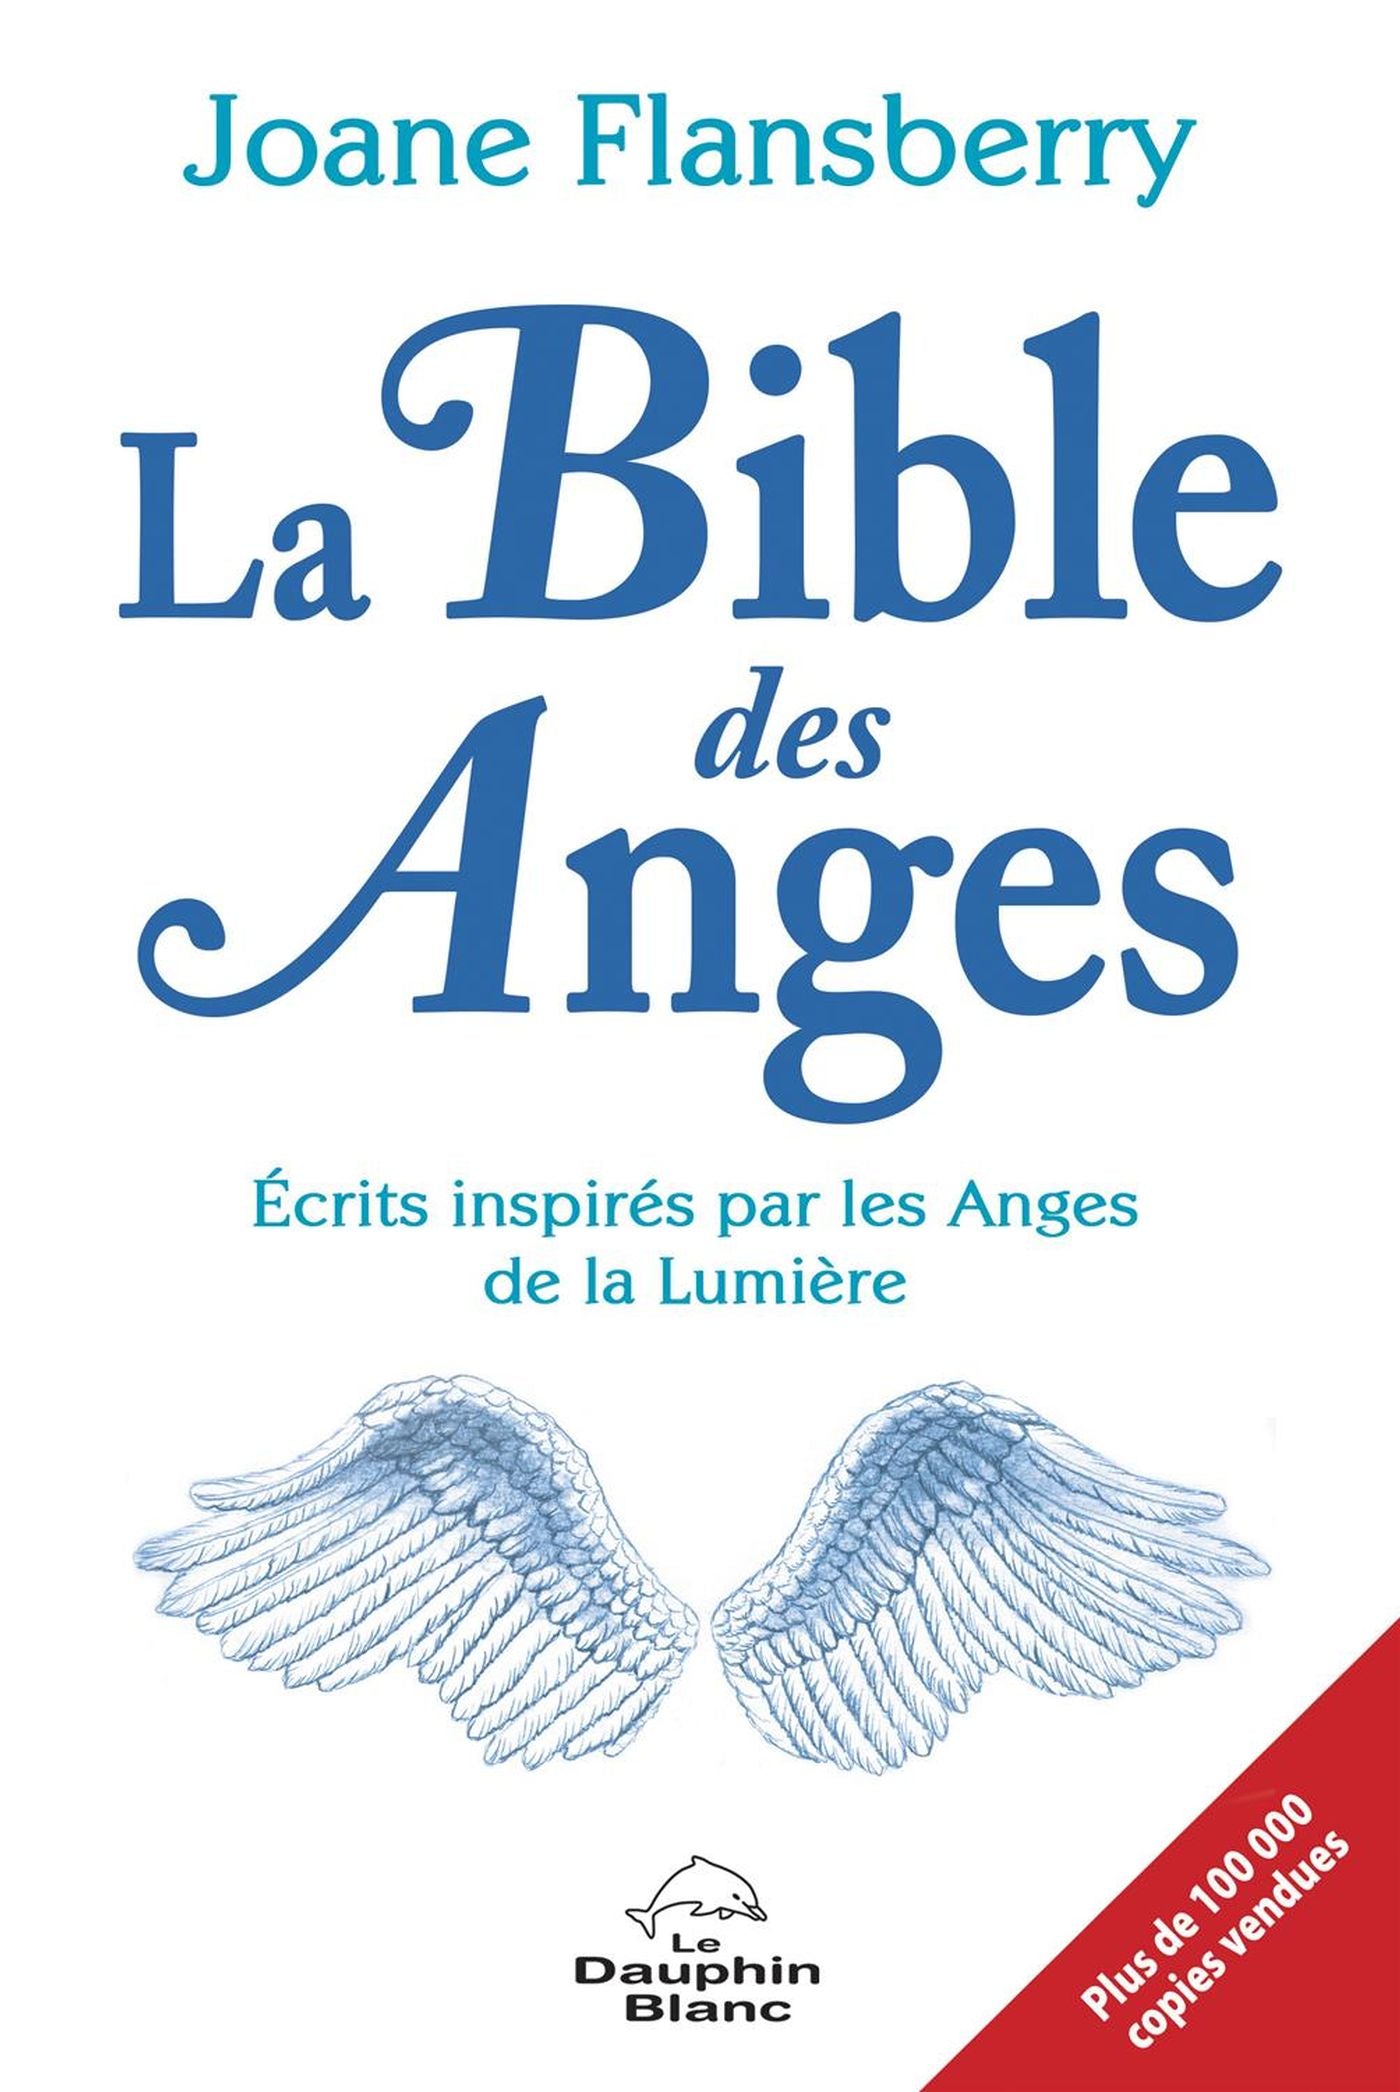 La Bible des Anges N.E. - Joane Flansberry